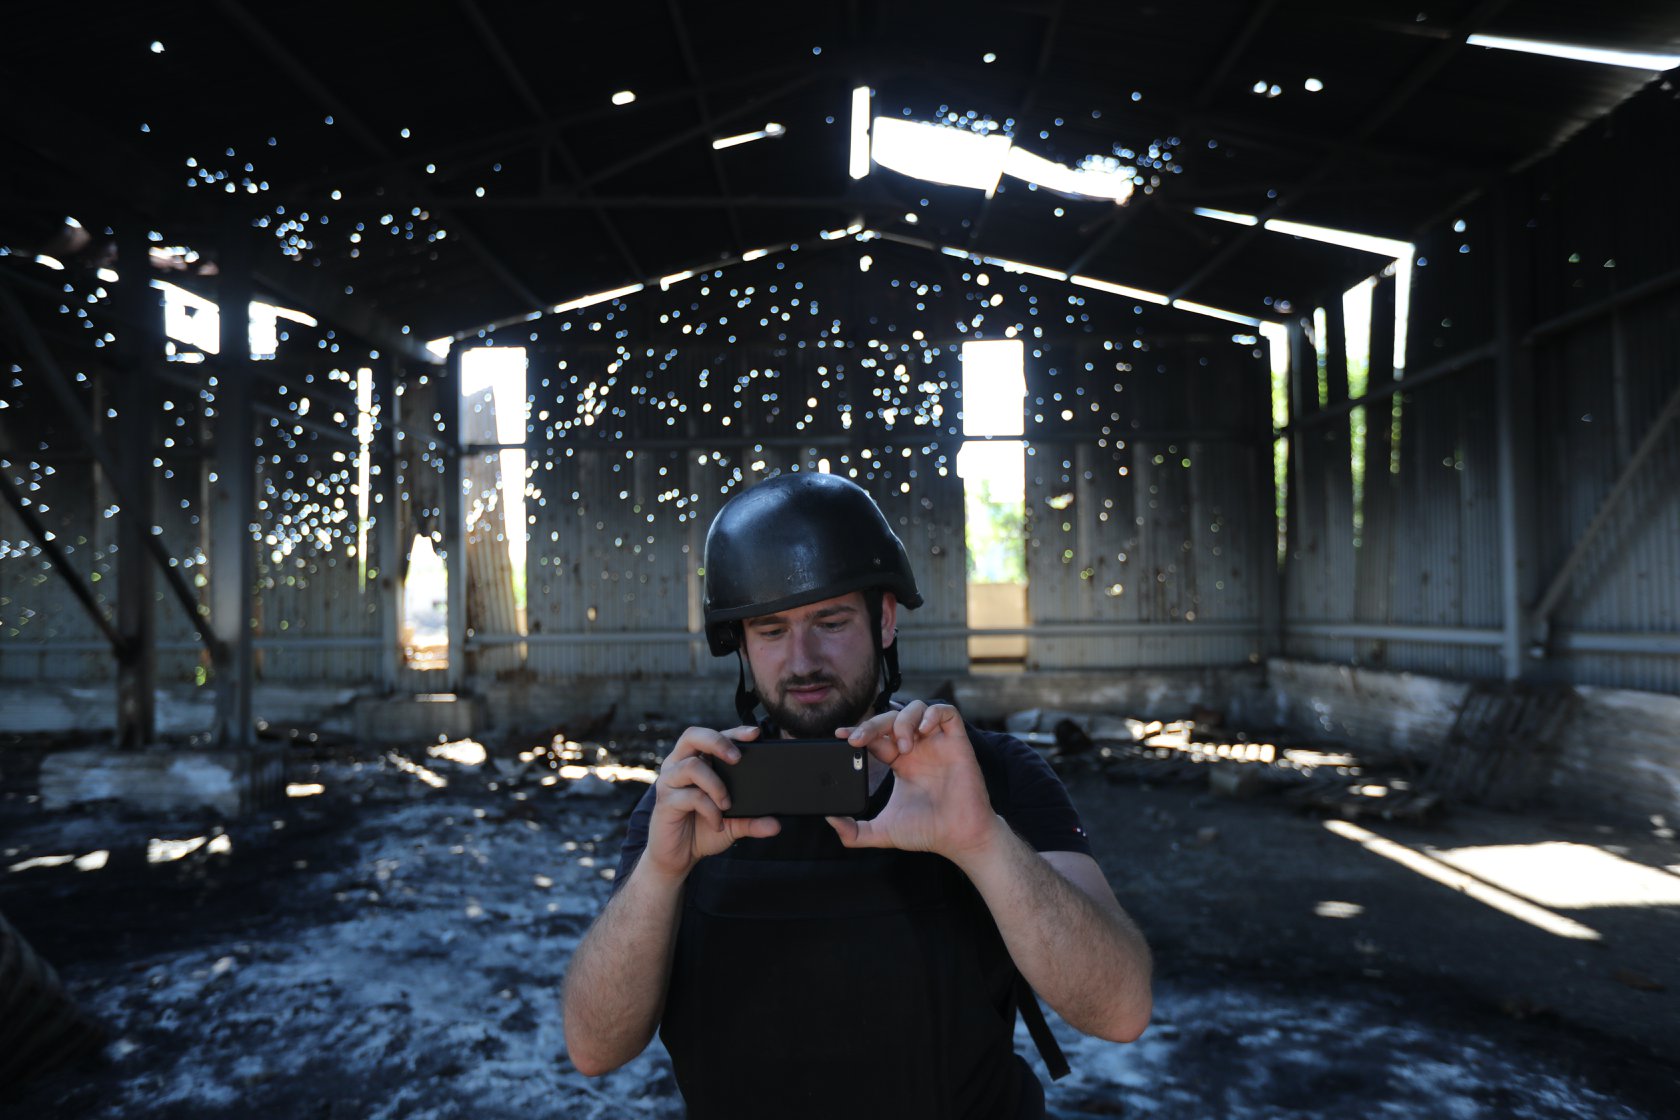 Illia Ponomarenko ottaa valokuvaa kännykällä sodassa tuhoutuneen rakennuksen sisällä.